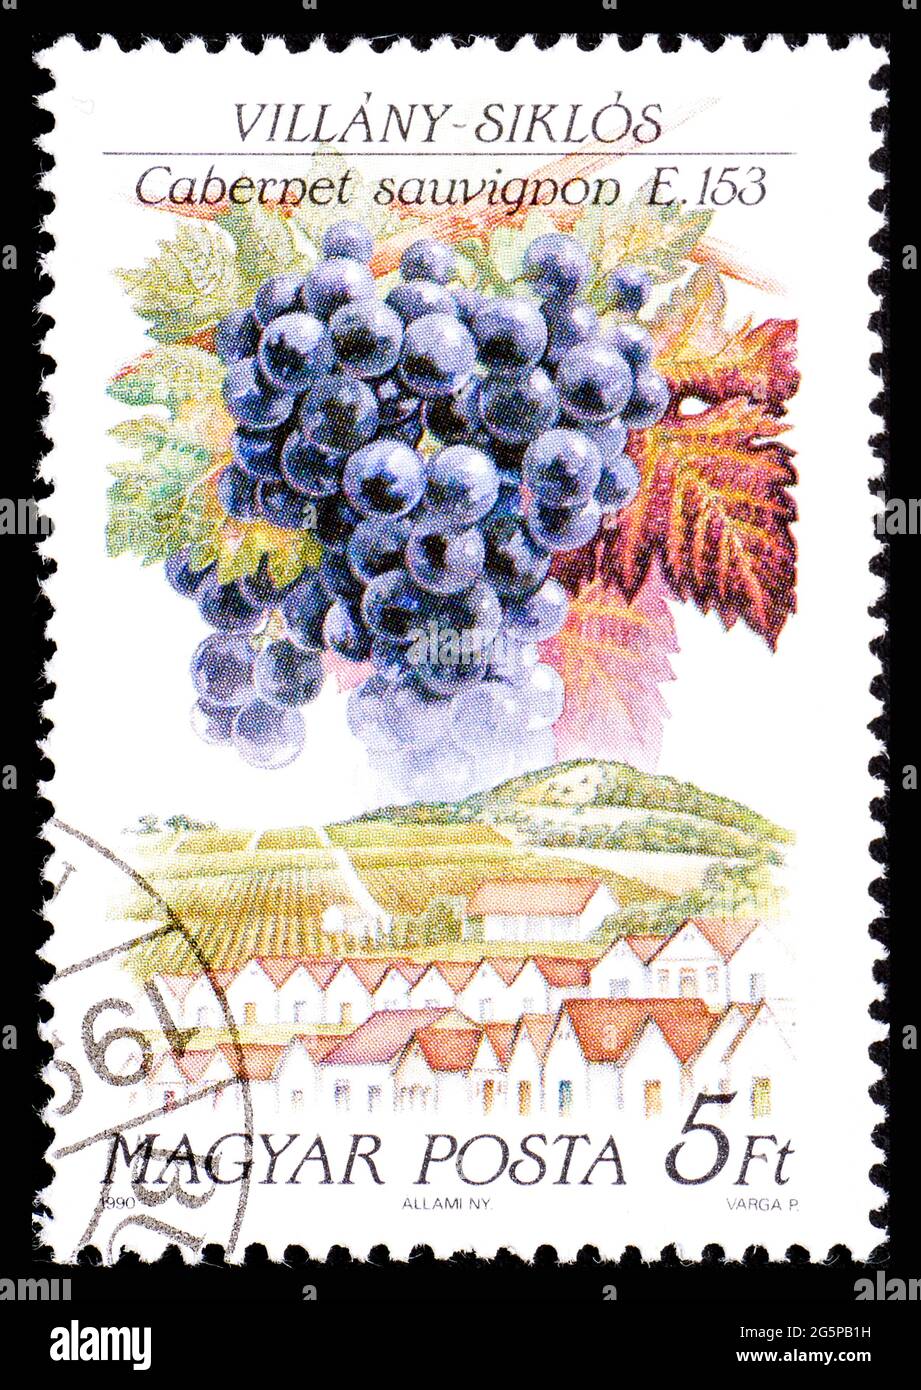 UNGHERIA - CIRCA 1990: Francobollo dall'Ungheria che mostra una specie di uva Cabernet sauvignon nella regione di Villany-Siklos Foto Stock